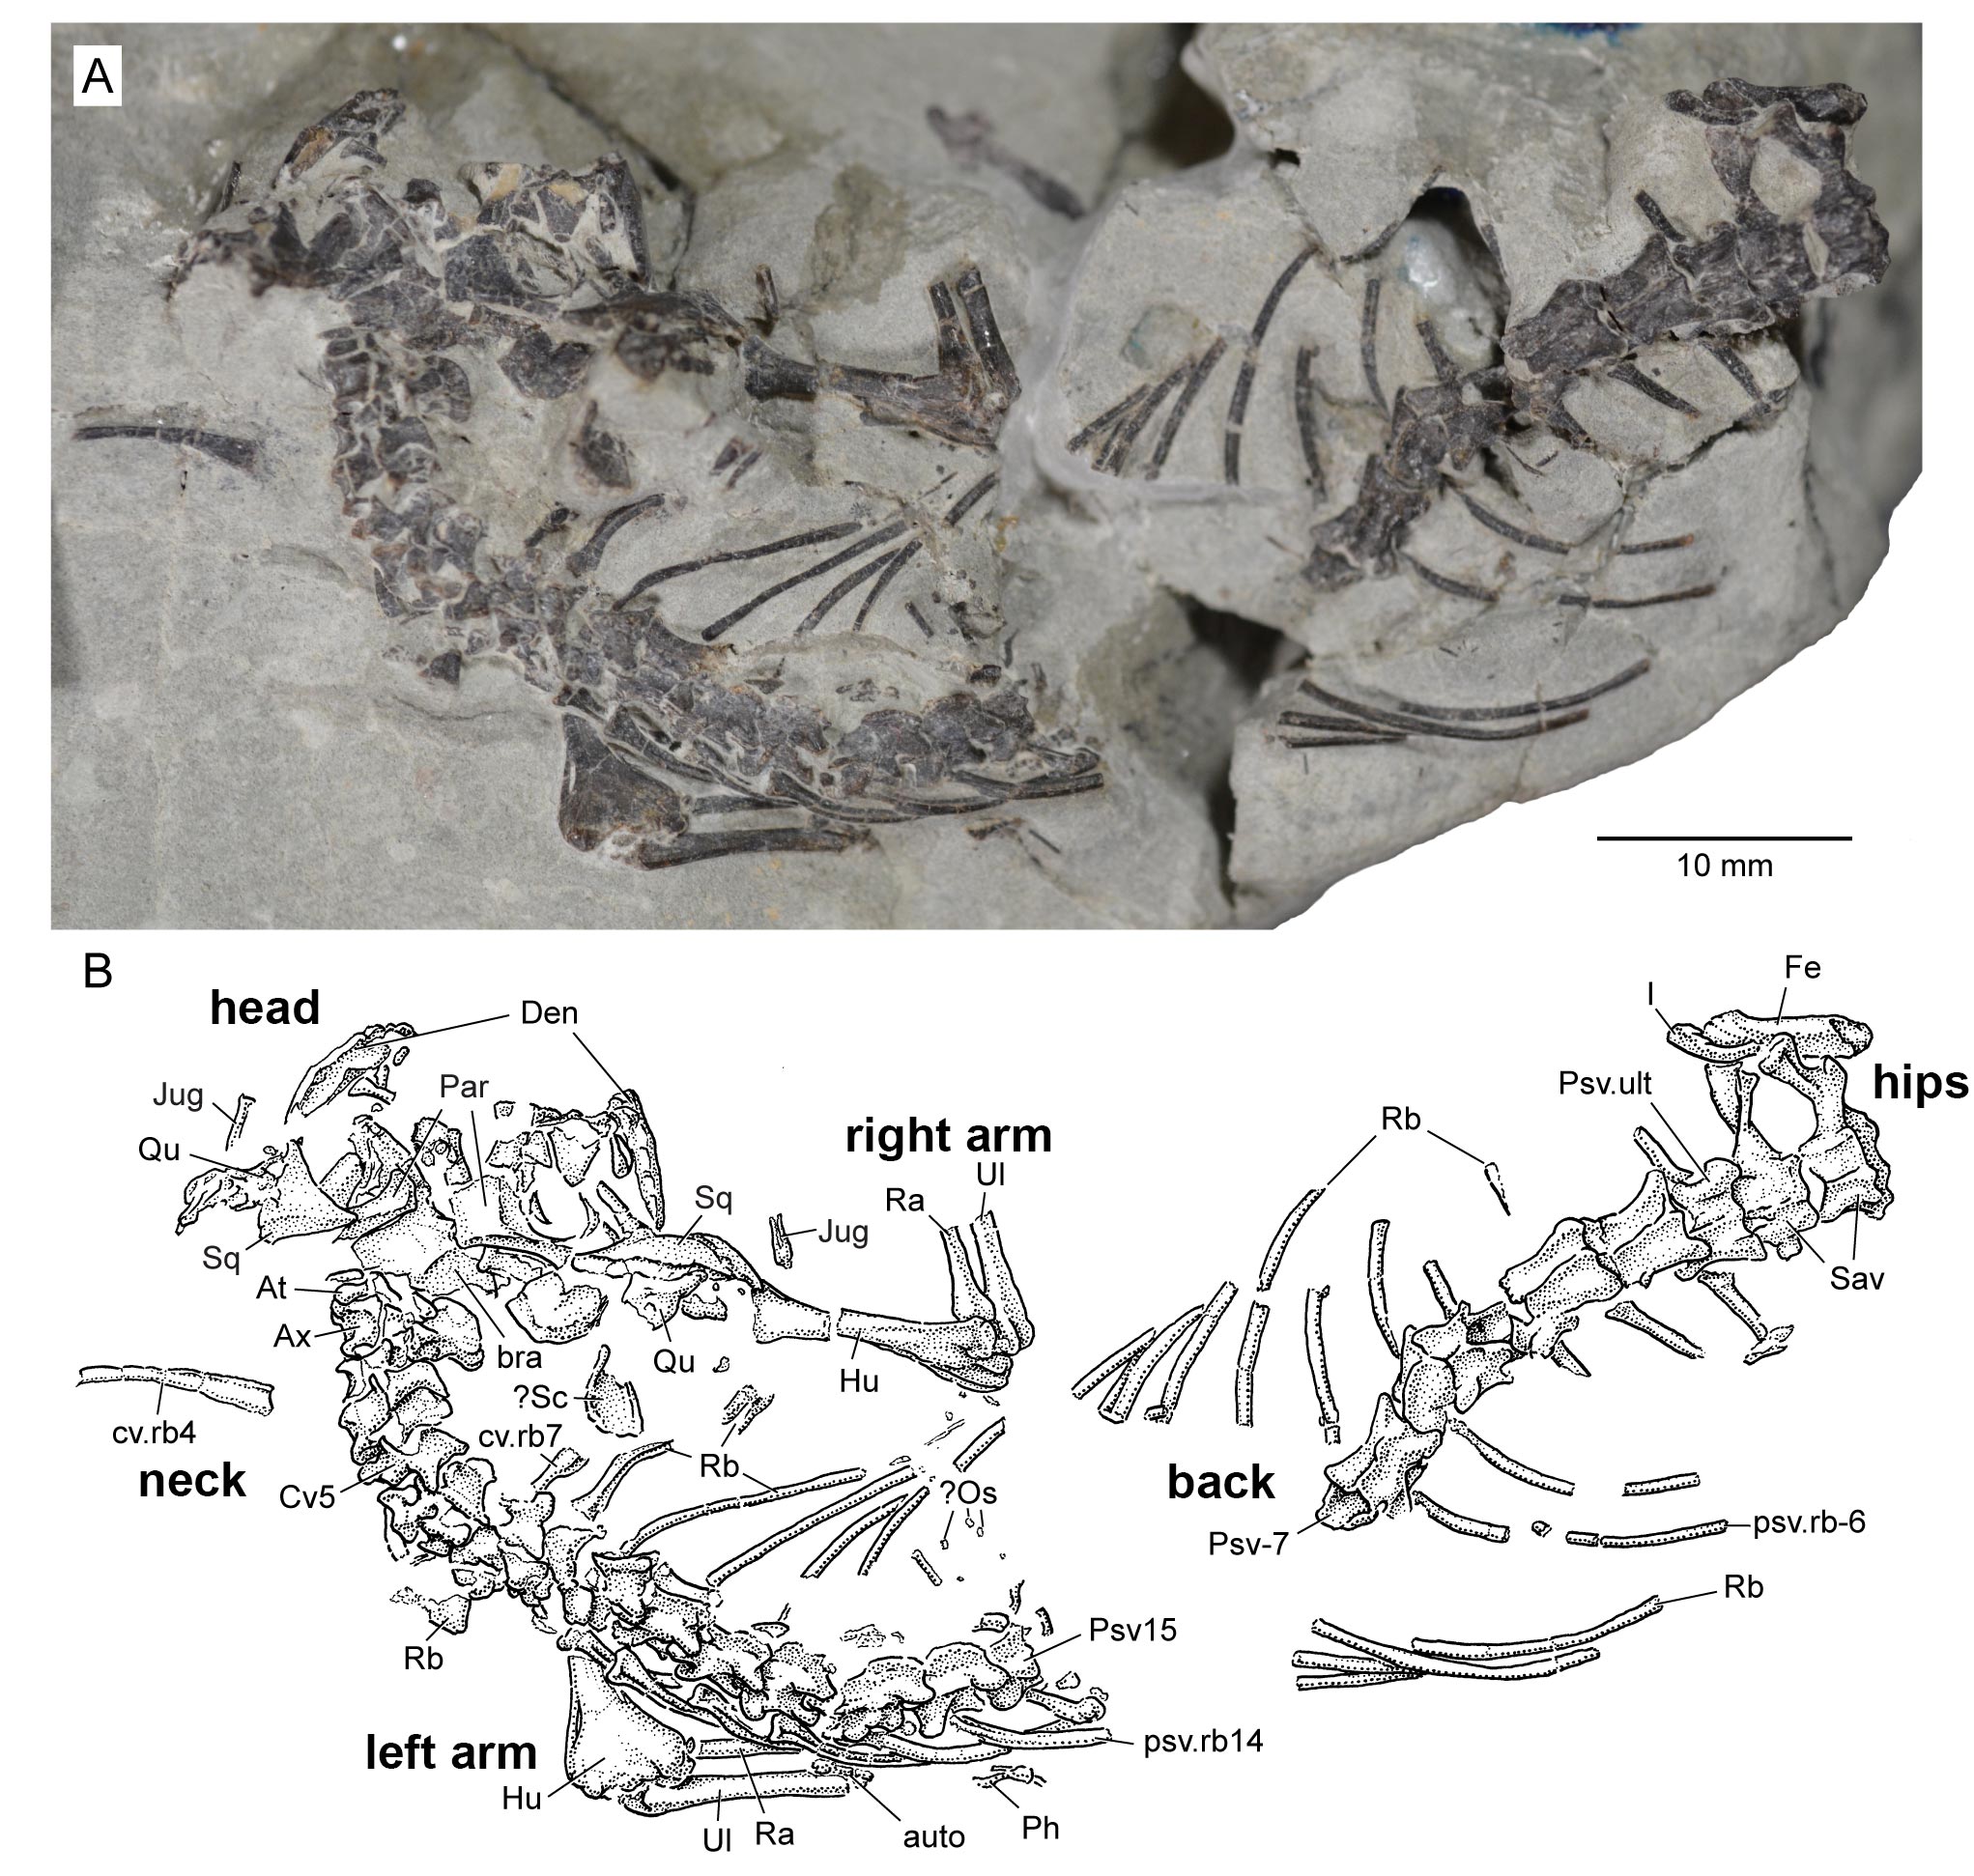 研究人员发现新的类似蜥蜴的侏罗纪时期爬行动物Opisthiamimus gregori